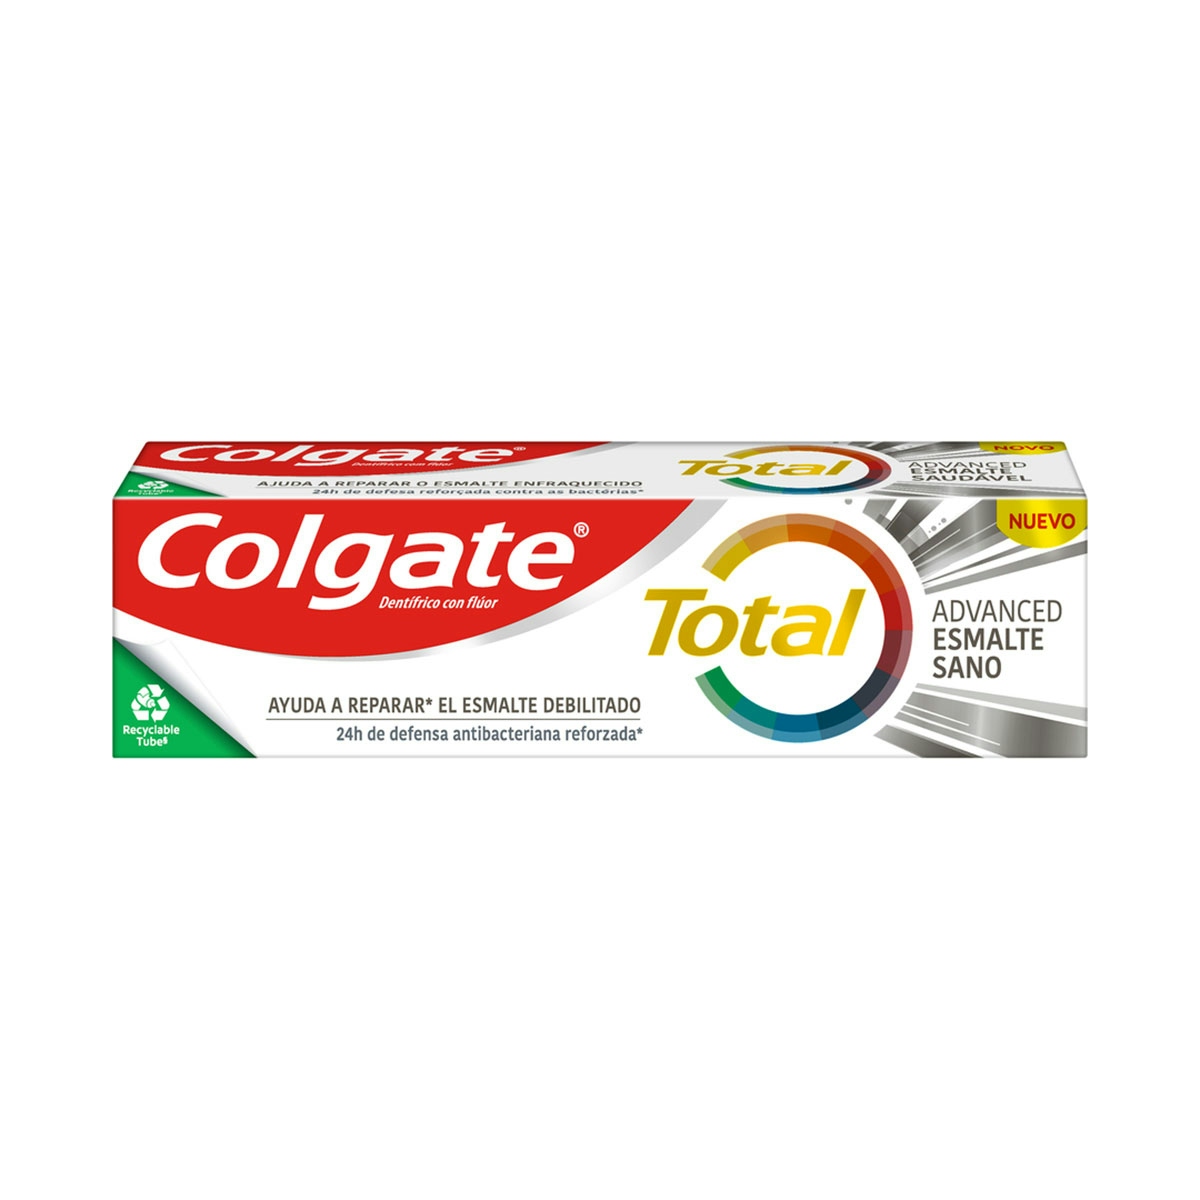 Pasta de dientes  Colgate Total Advanced Esmalte Sano 24h de protección completa 75ml